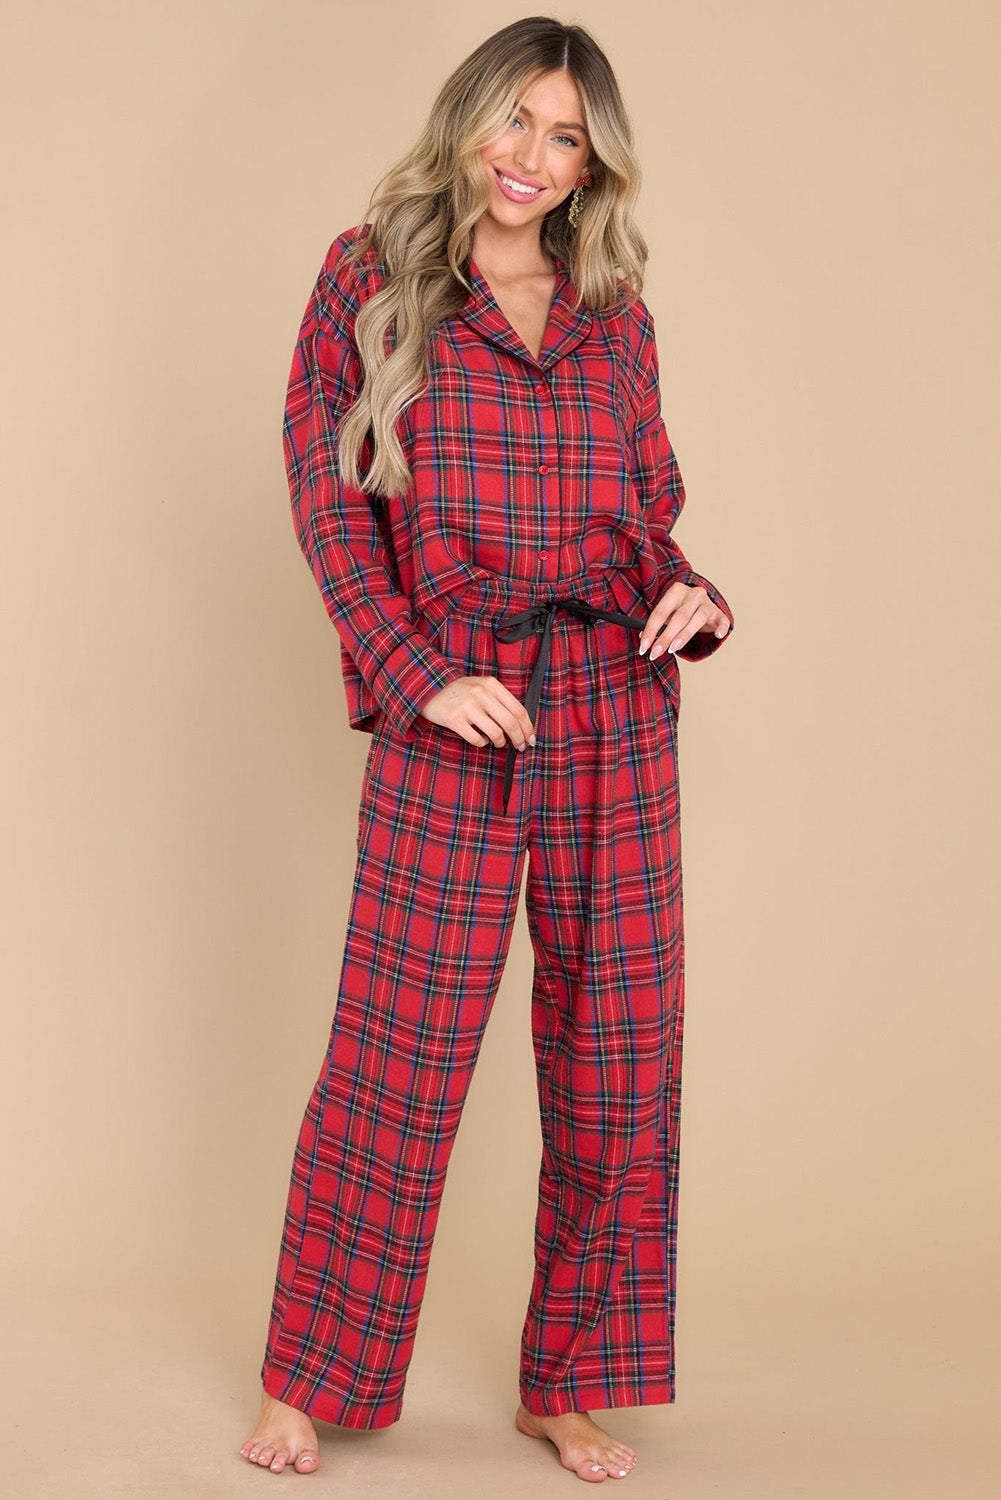 Red Tartan Plaid Pajama Pants Set Loungewear JT's Designer Fashion